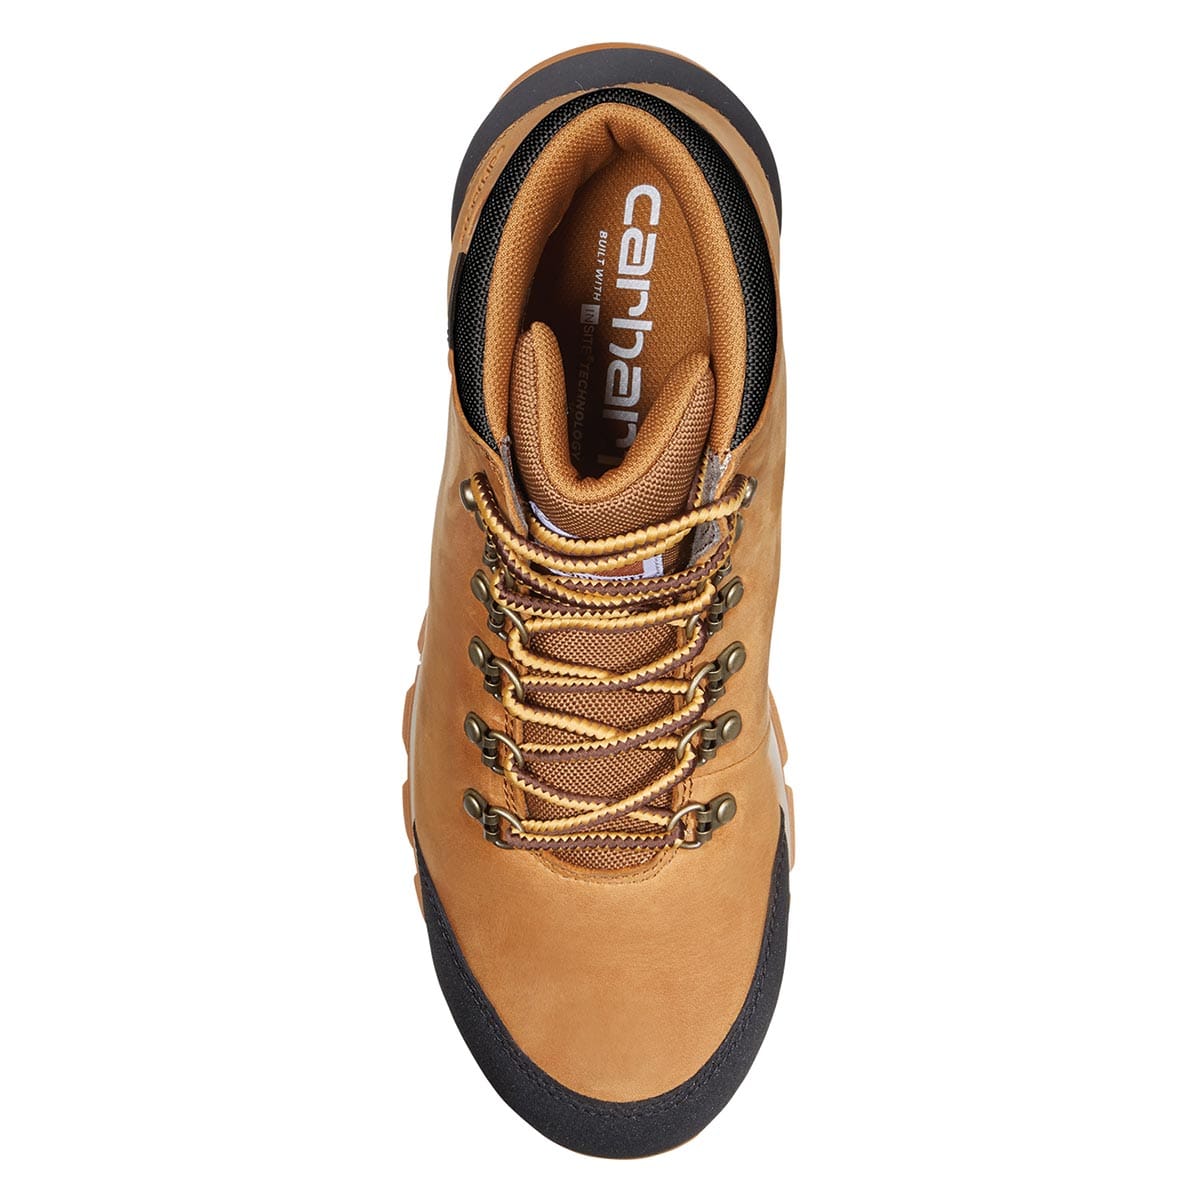 Carhartt Men's Gilmore Waterproof 5" Hiker Boots - Light Brown